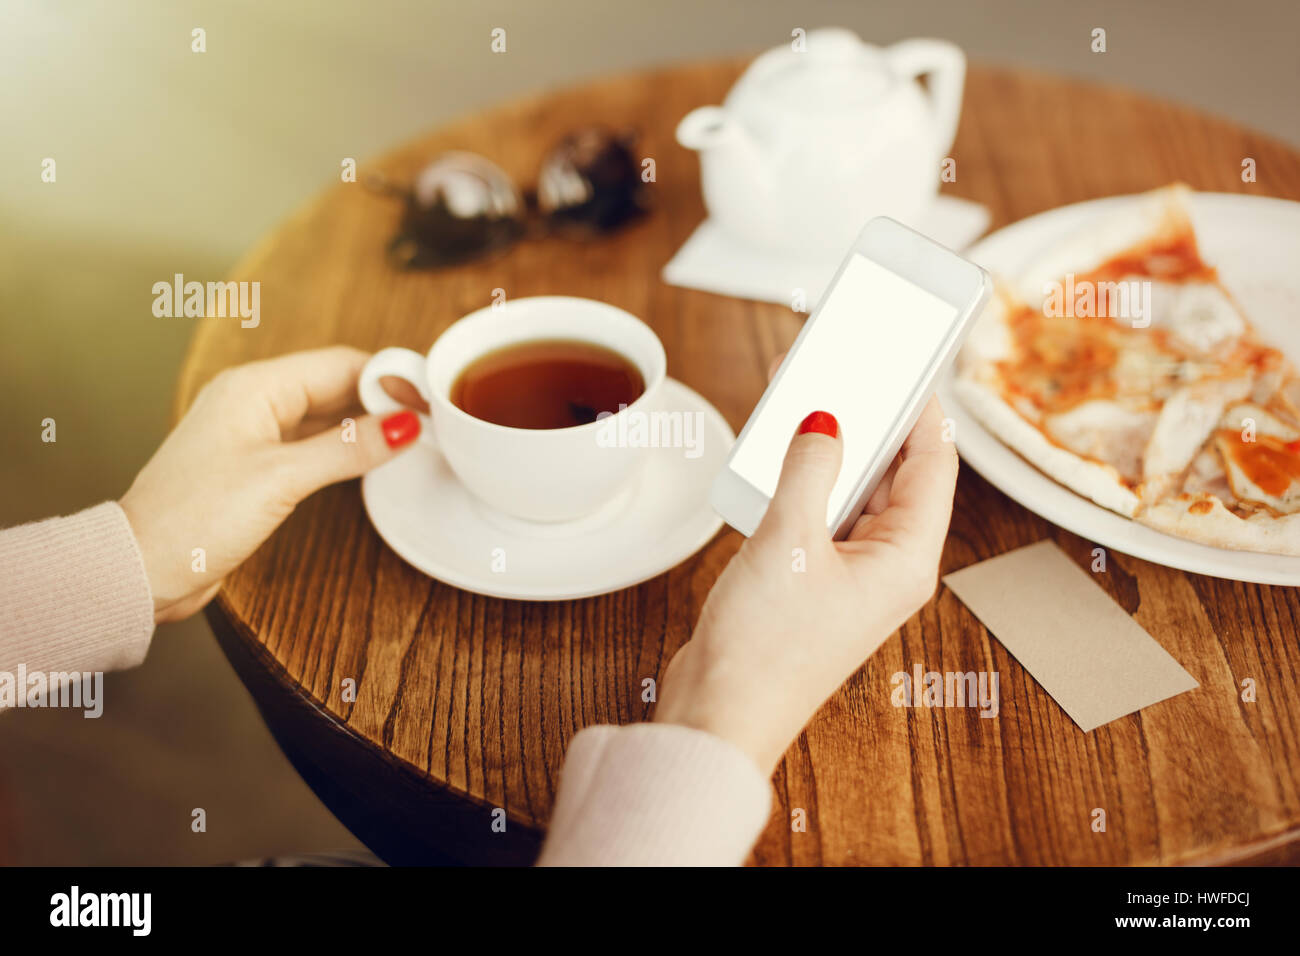 Mädchen hält Smartphone mit leeren Bildschirm im café Stockfoto